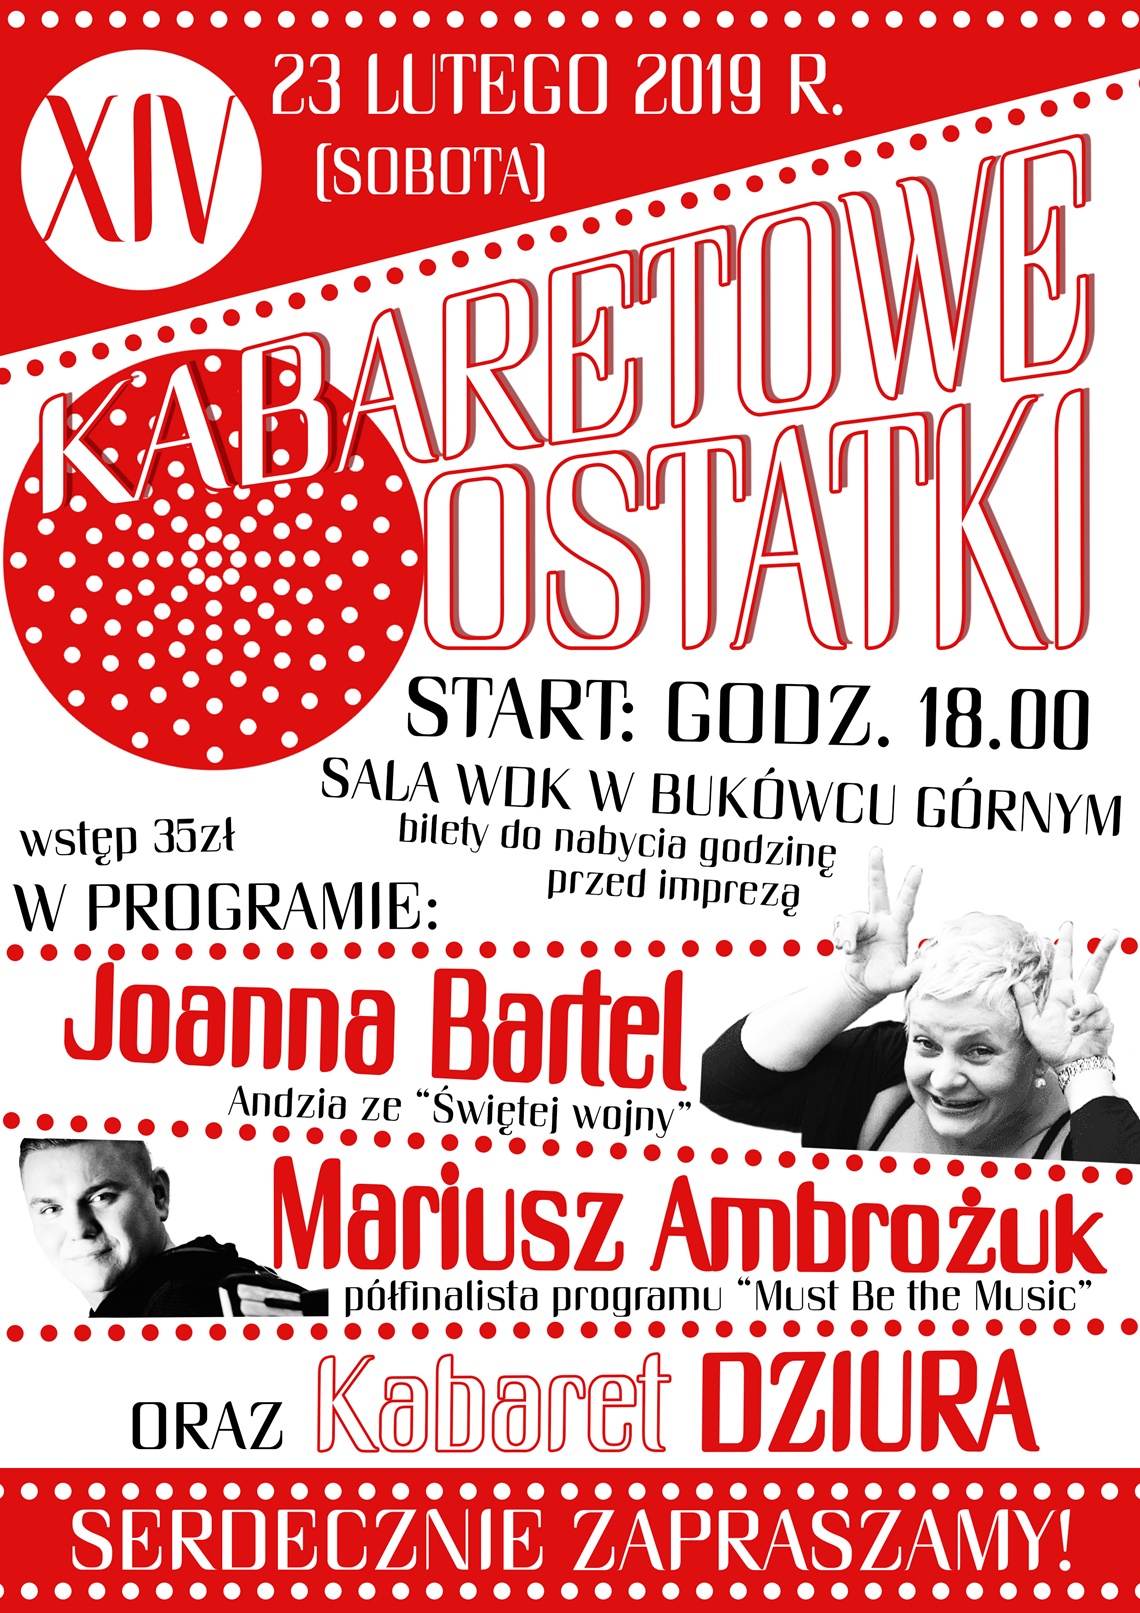 Kabaretowe Ostatki 2019 - zaproszenie